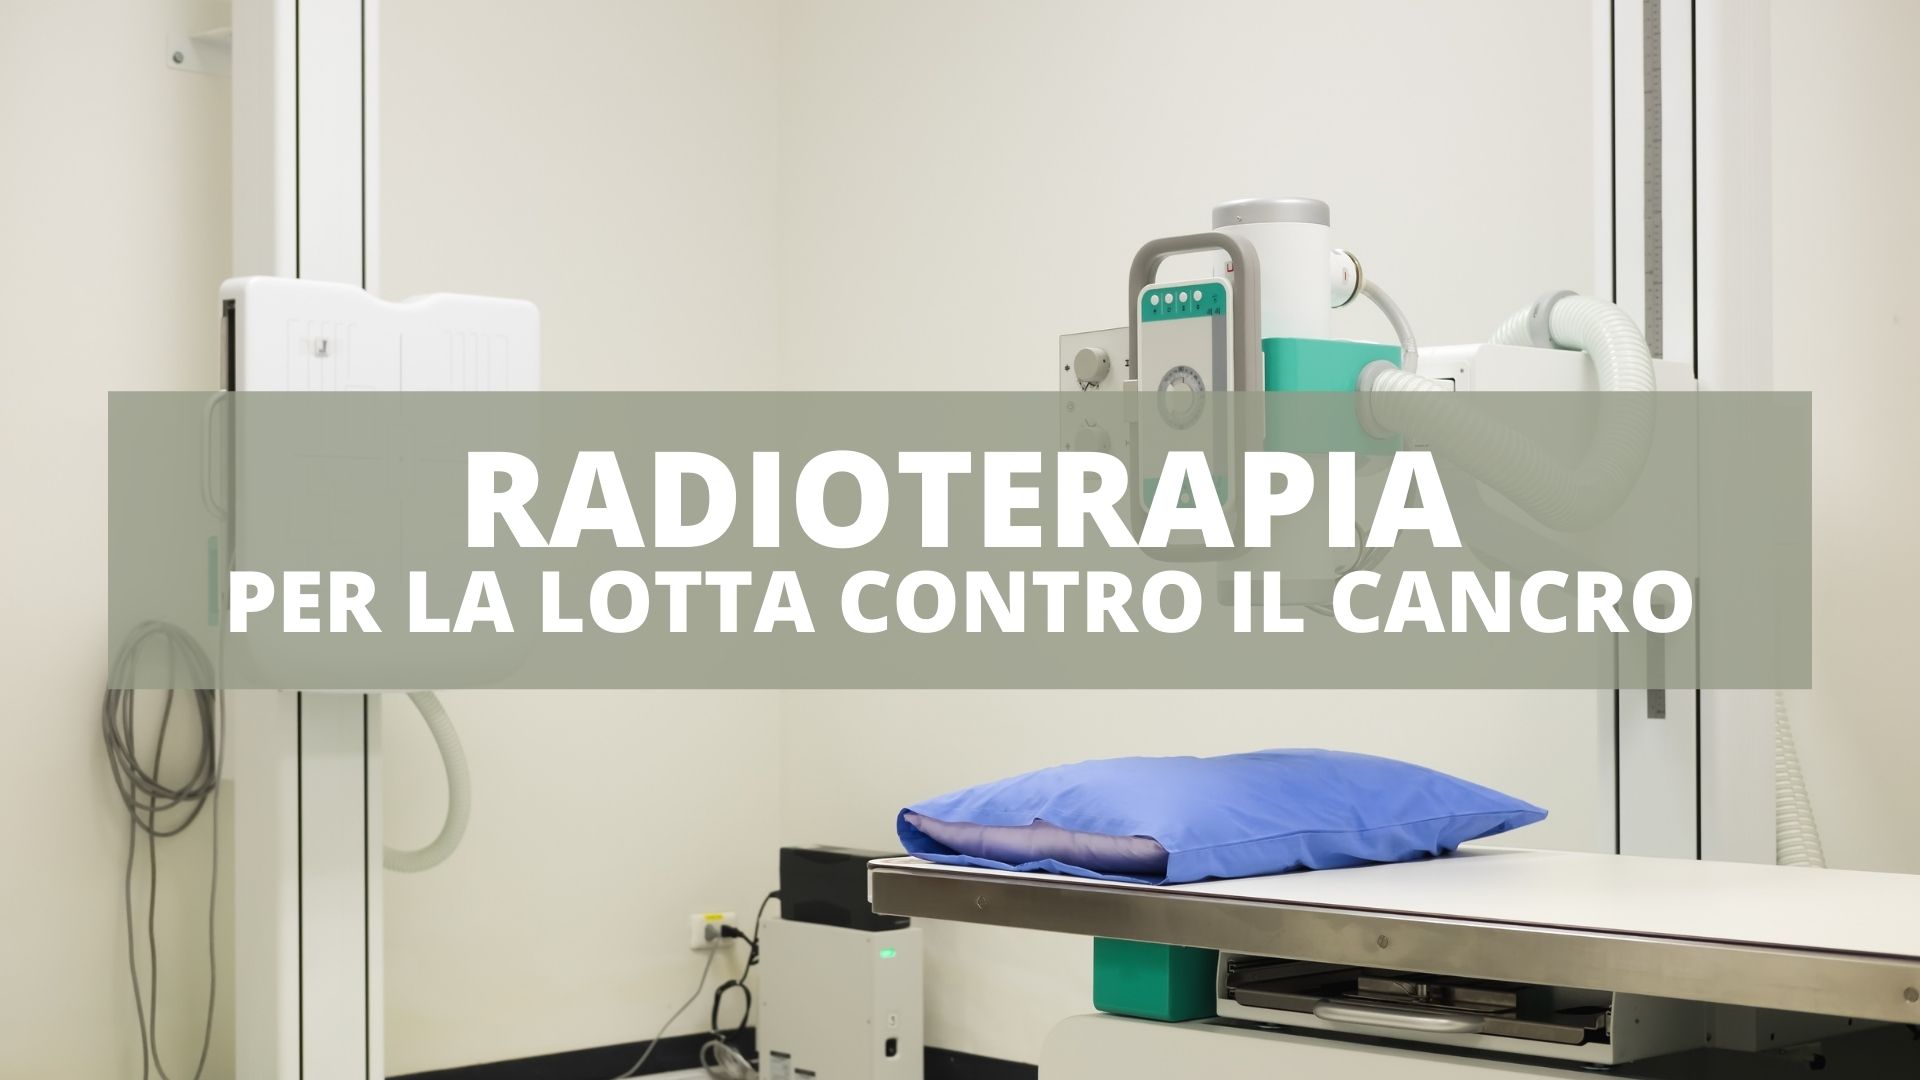 radioterapia per la lotta contro il cancro